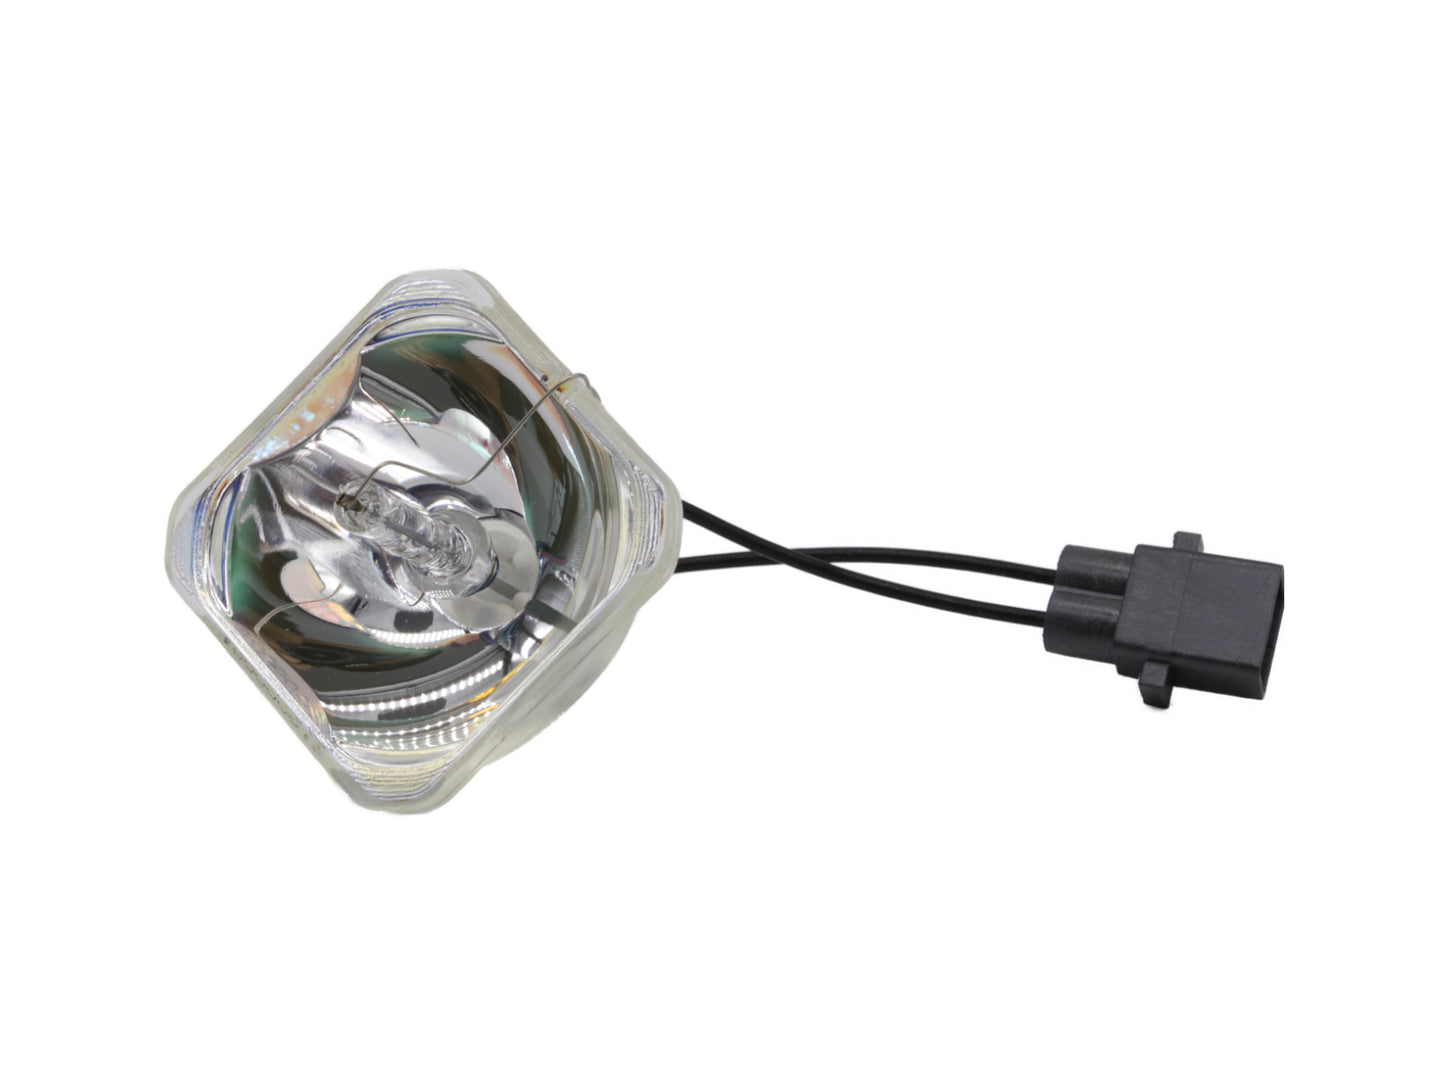 azurano Beamerlampe für EPSON ELPLP57, V13H010L57 Ersatzlampe Projektorlampe - Bild 2